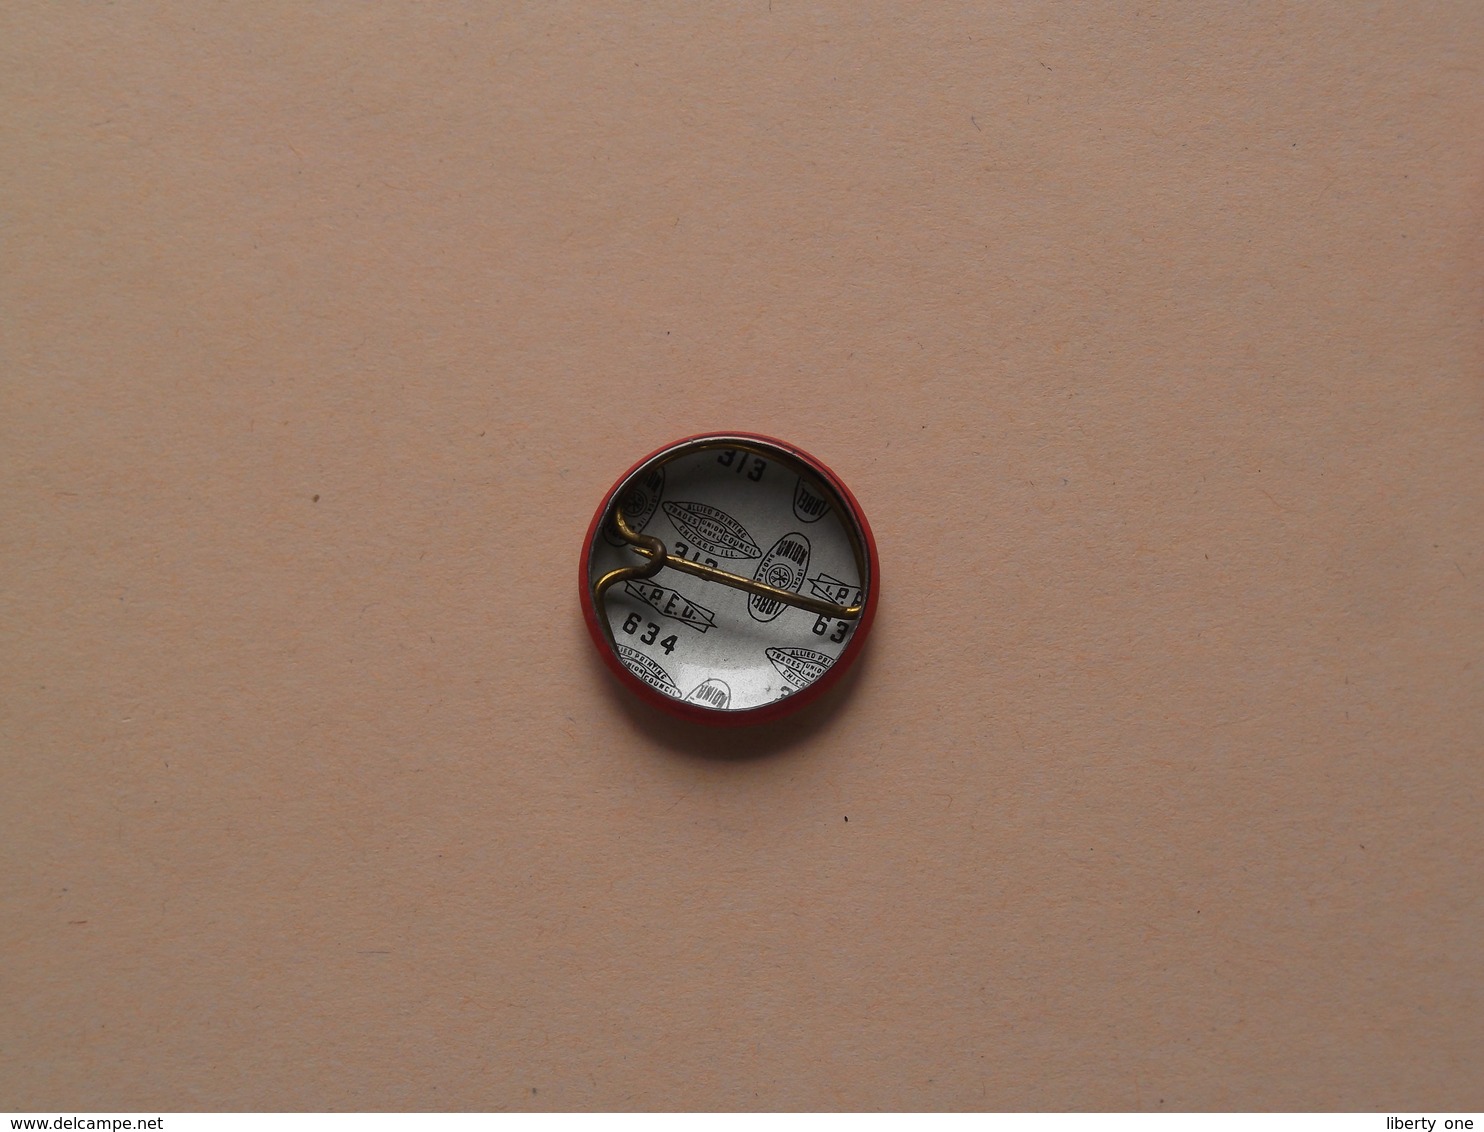 BEGINNER SWIMMER ( Red Cross ) Older Button / Pin / Speld / Epingle ( +/- 2 Cm. ) Zie Foto Voor Detail / Metal Button ! - Natación